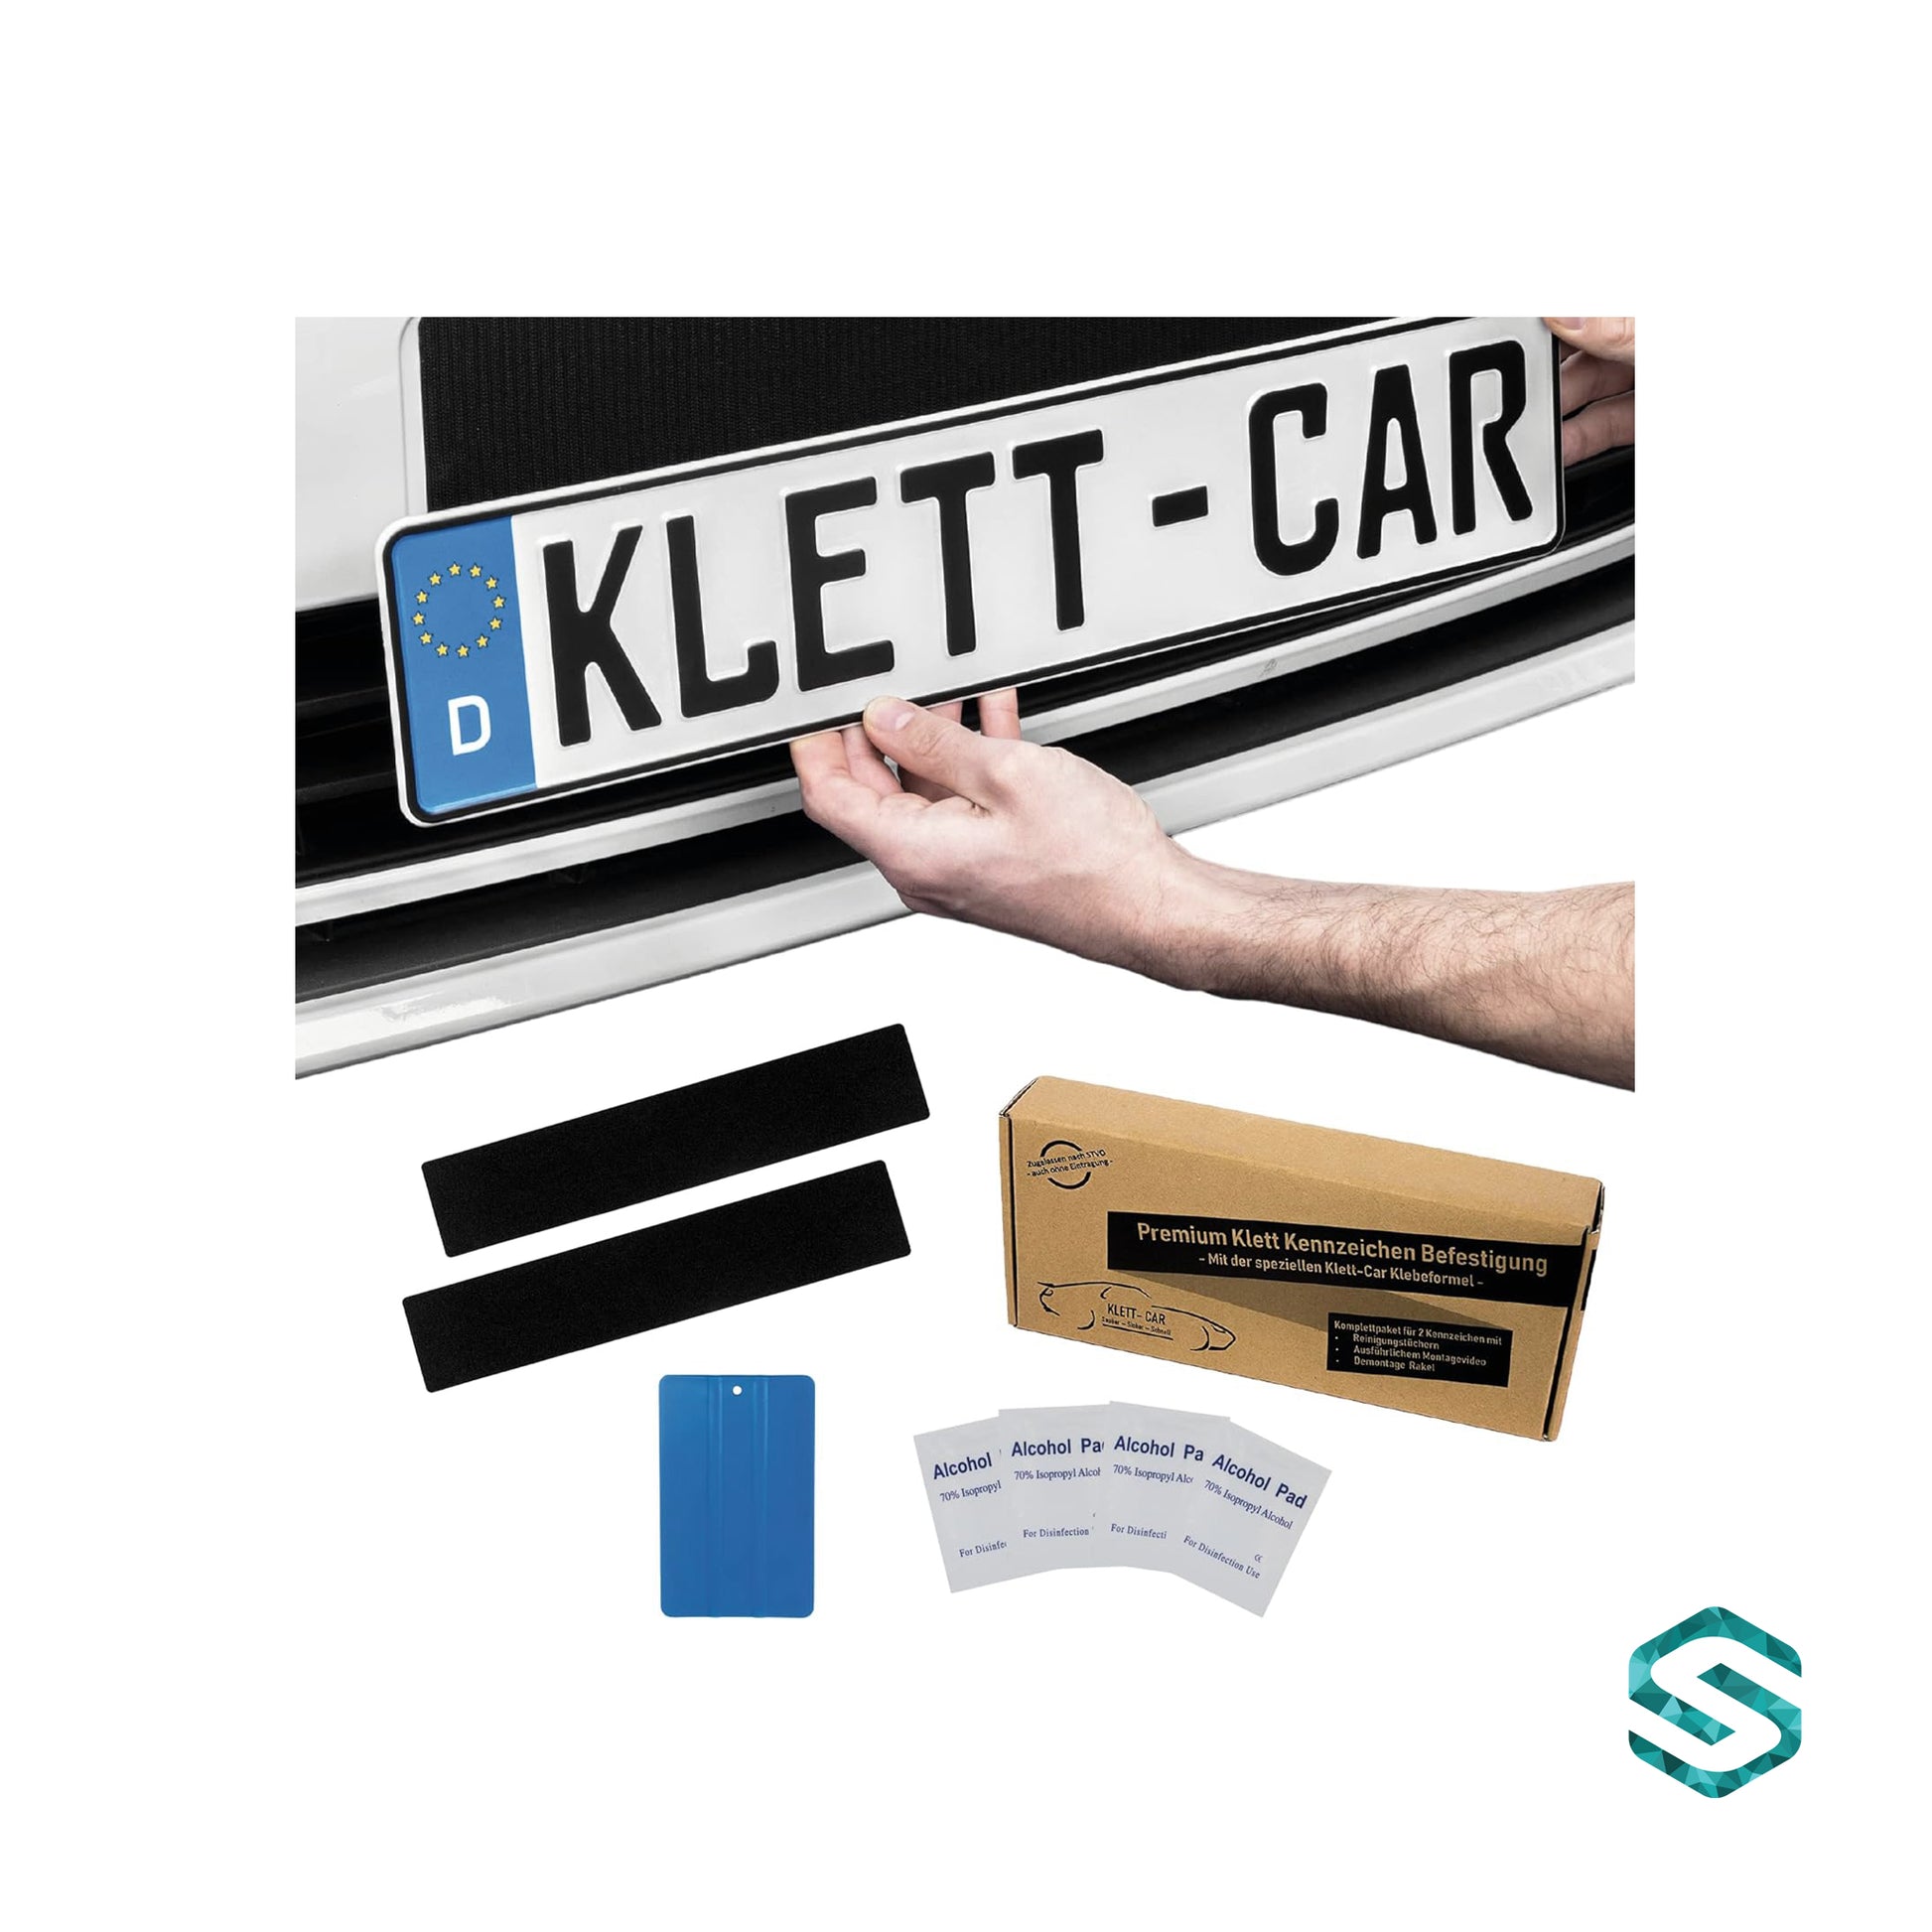 Klett-Car - Premium Klett Kennzeichen Befestigung – Soleo Shop